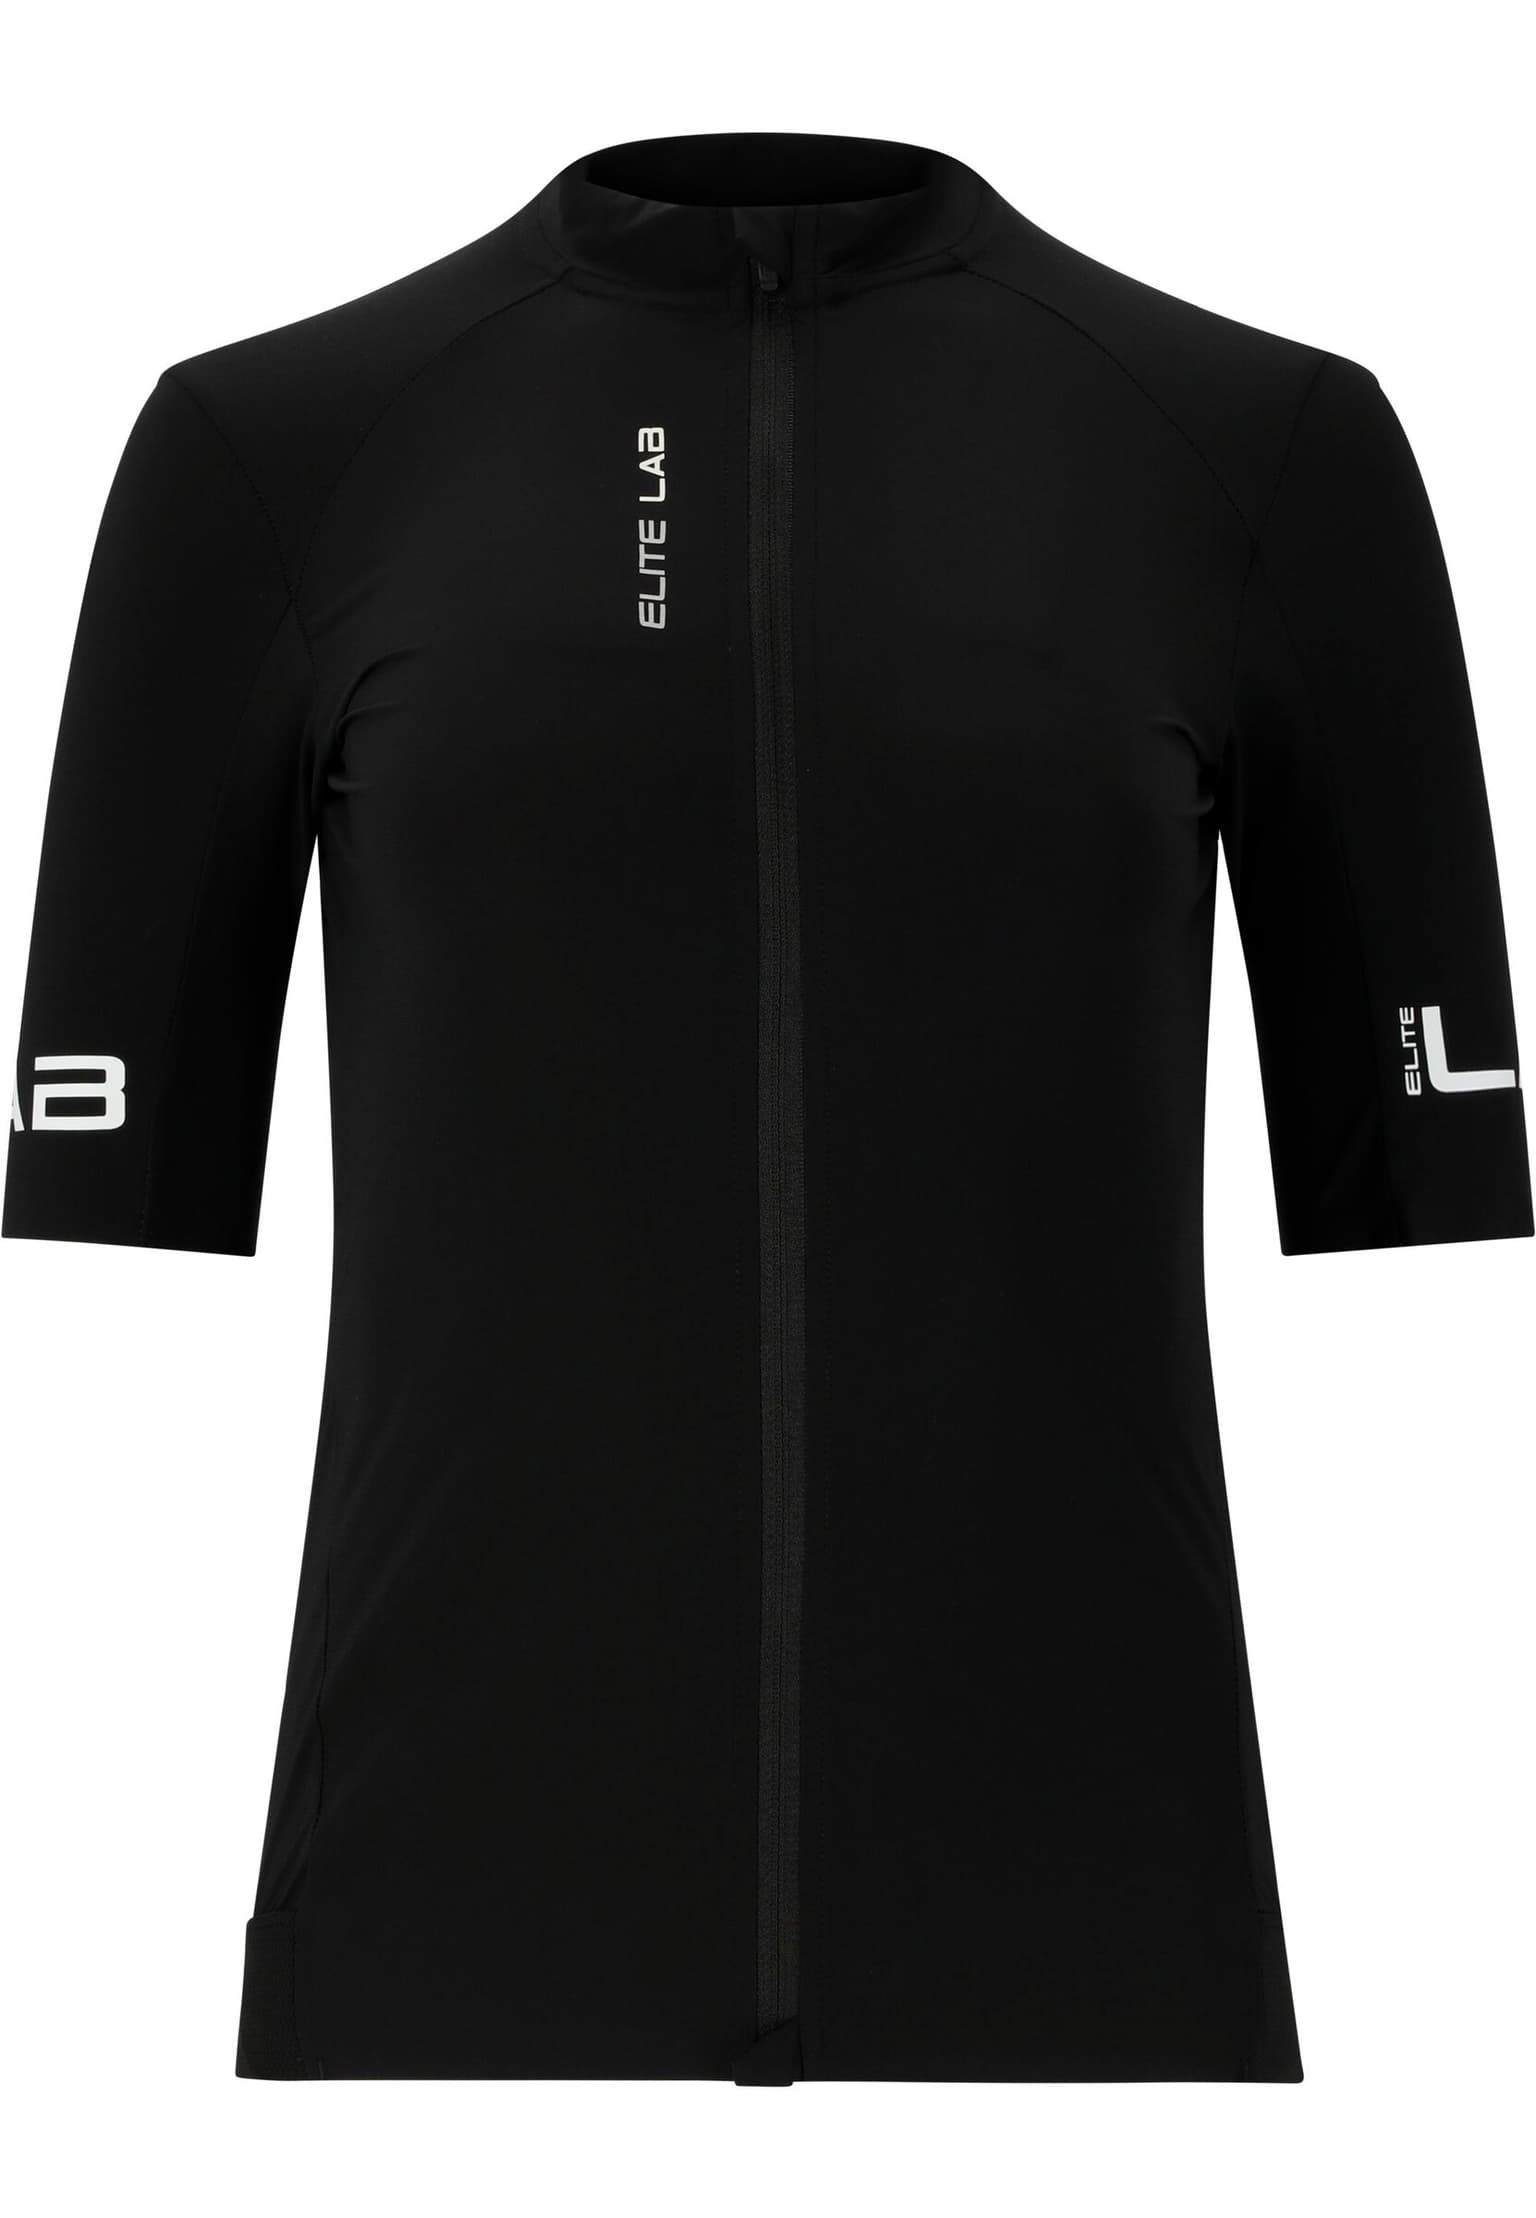 Elite Lab Elite Lab Bike Elite X1 Core S/S Jersey Maglietta da bici nero 1